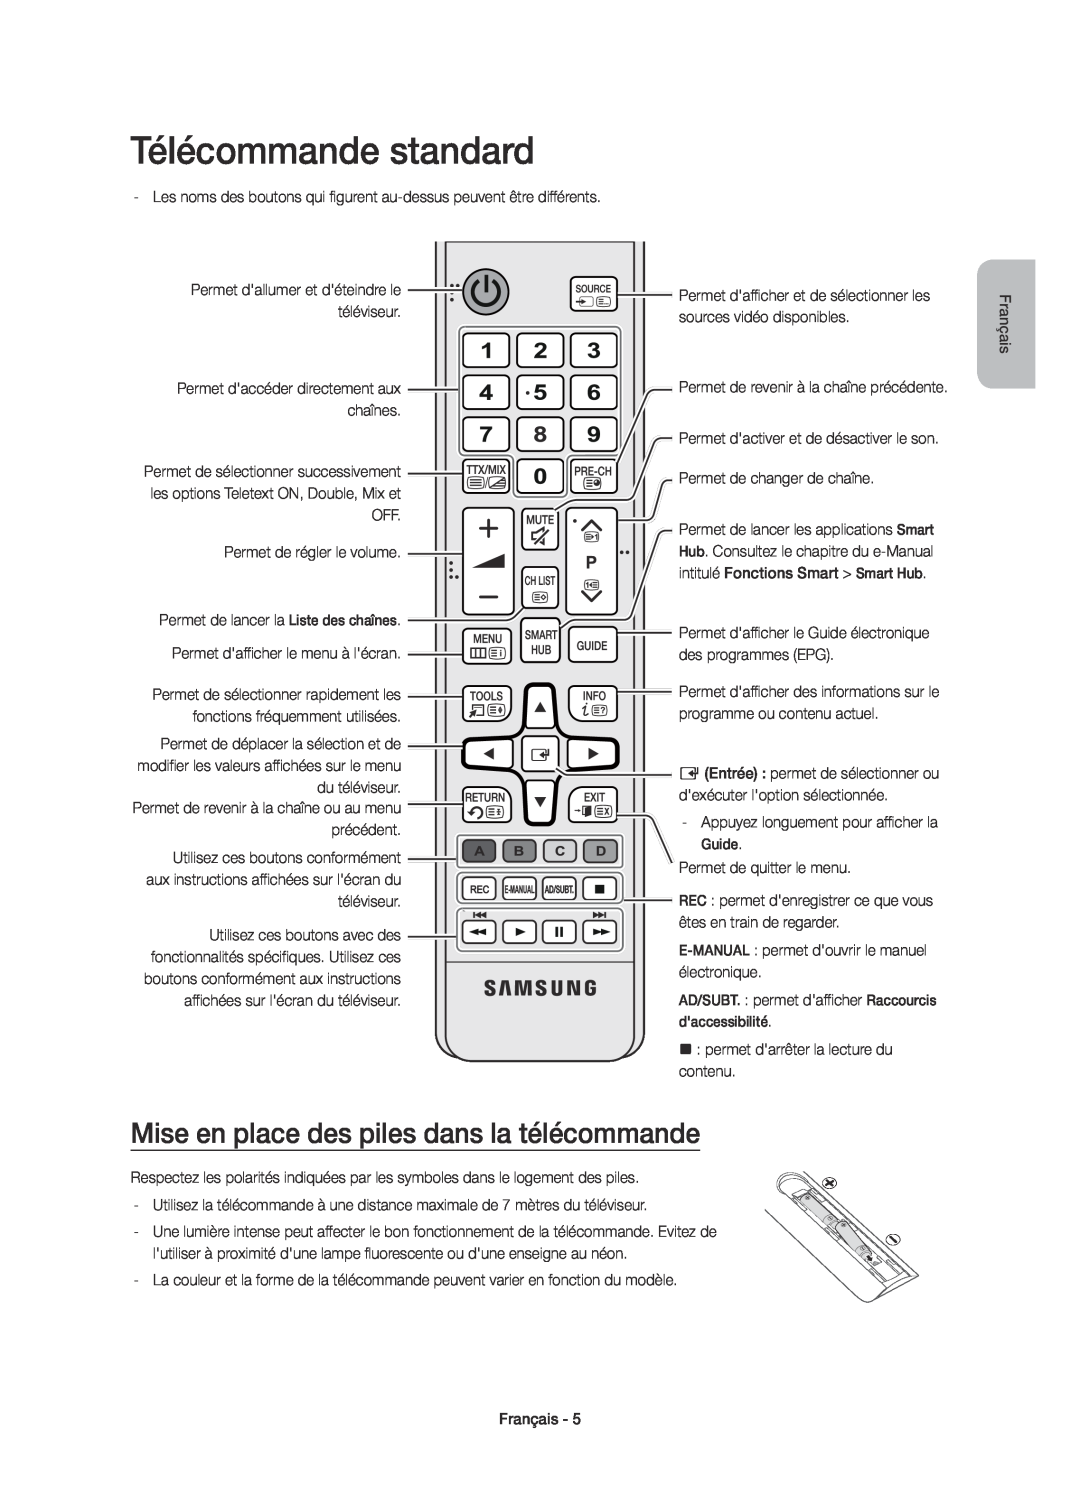 Samsung UE55JU6650SXXN, UE40JU6750UXZG, UE40JU6640UXZG Télécommande standard, Mise en place des piles dans la télécommande 